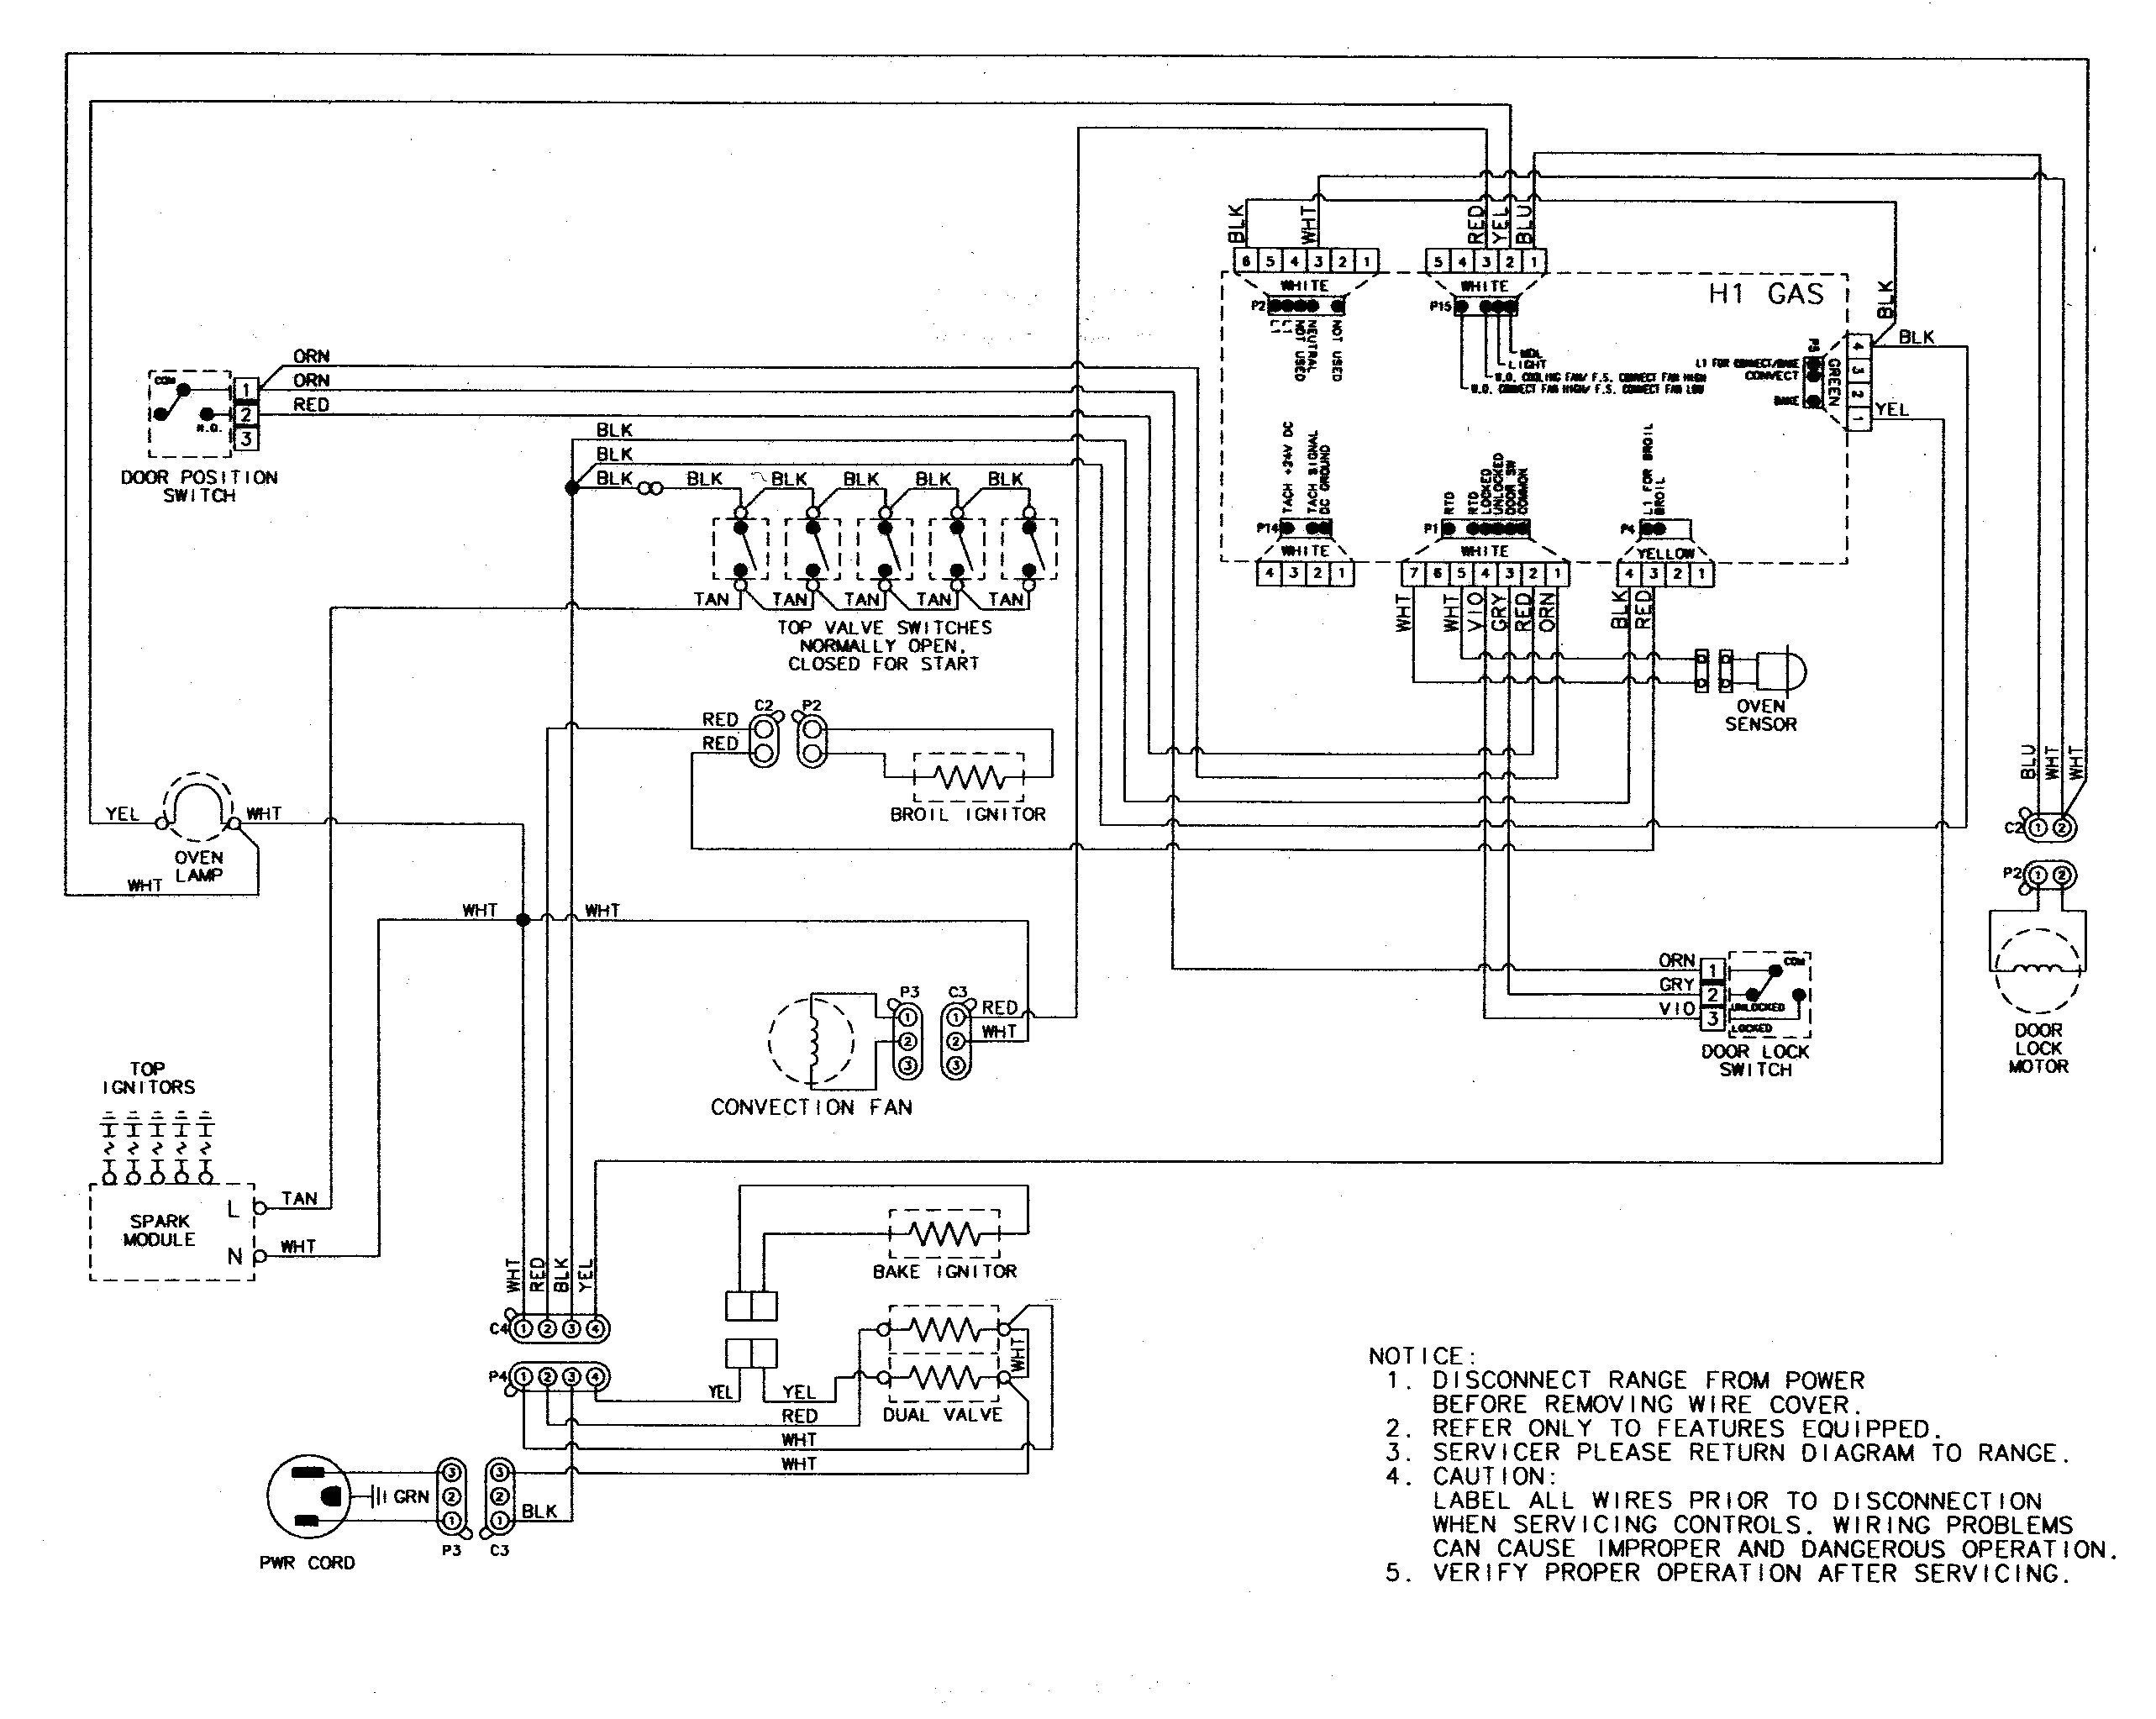 electrical outlet symbols blueprints on ge stove electric range electric range wiring schematic wiring diagram blog